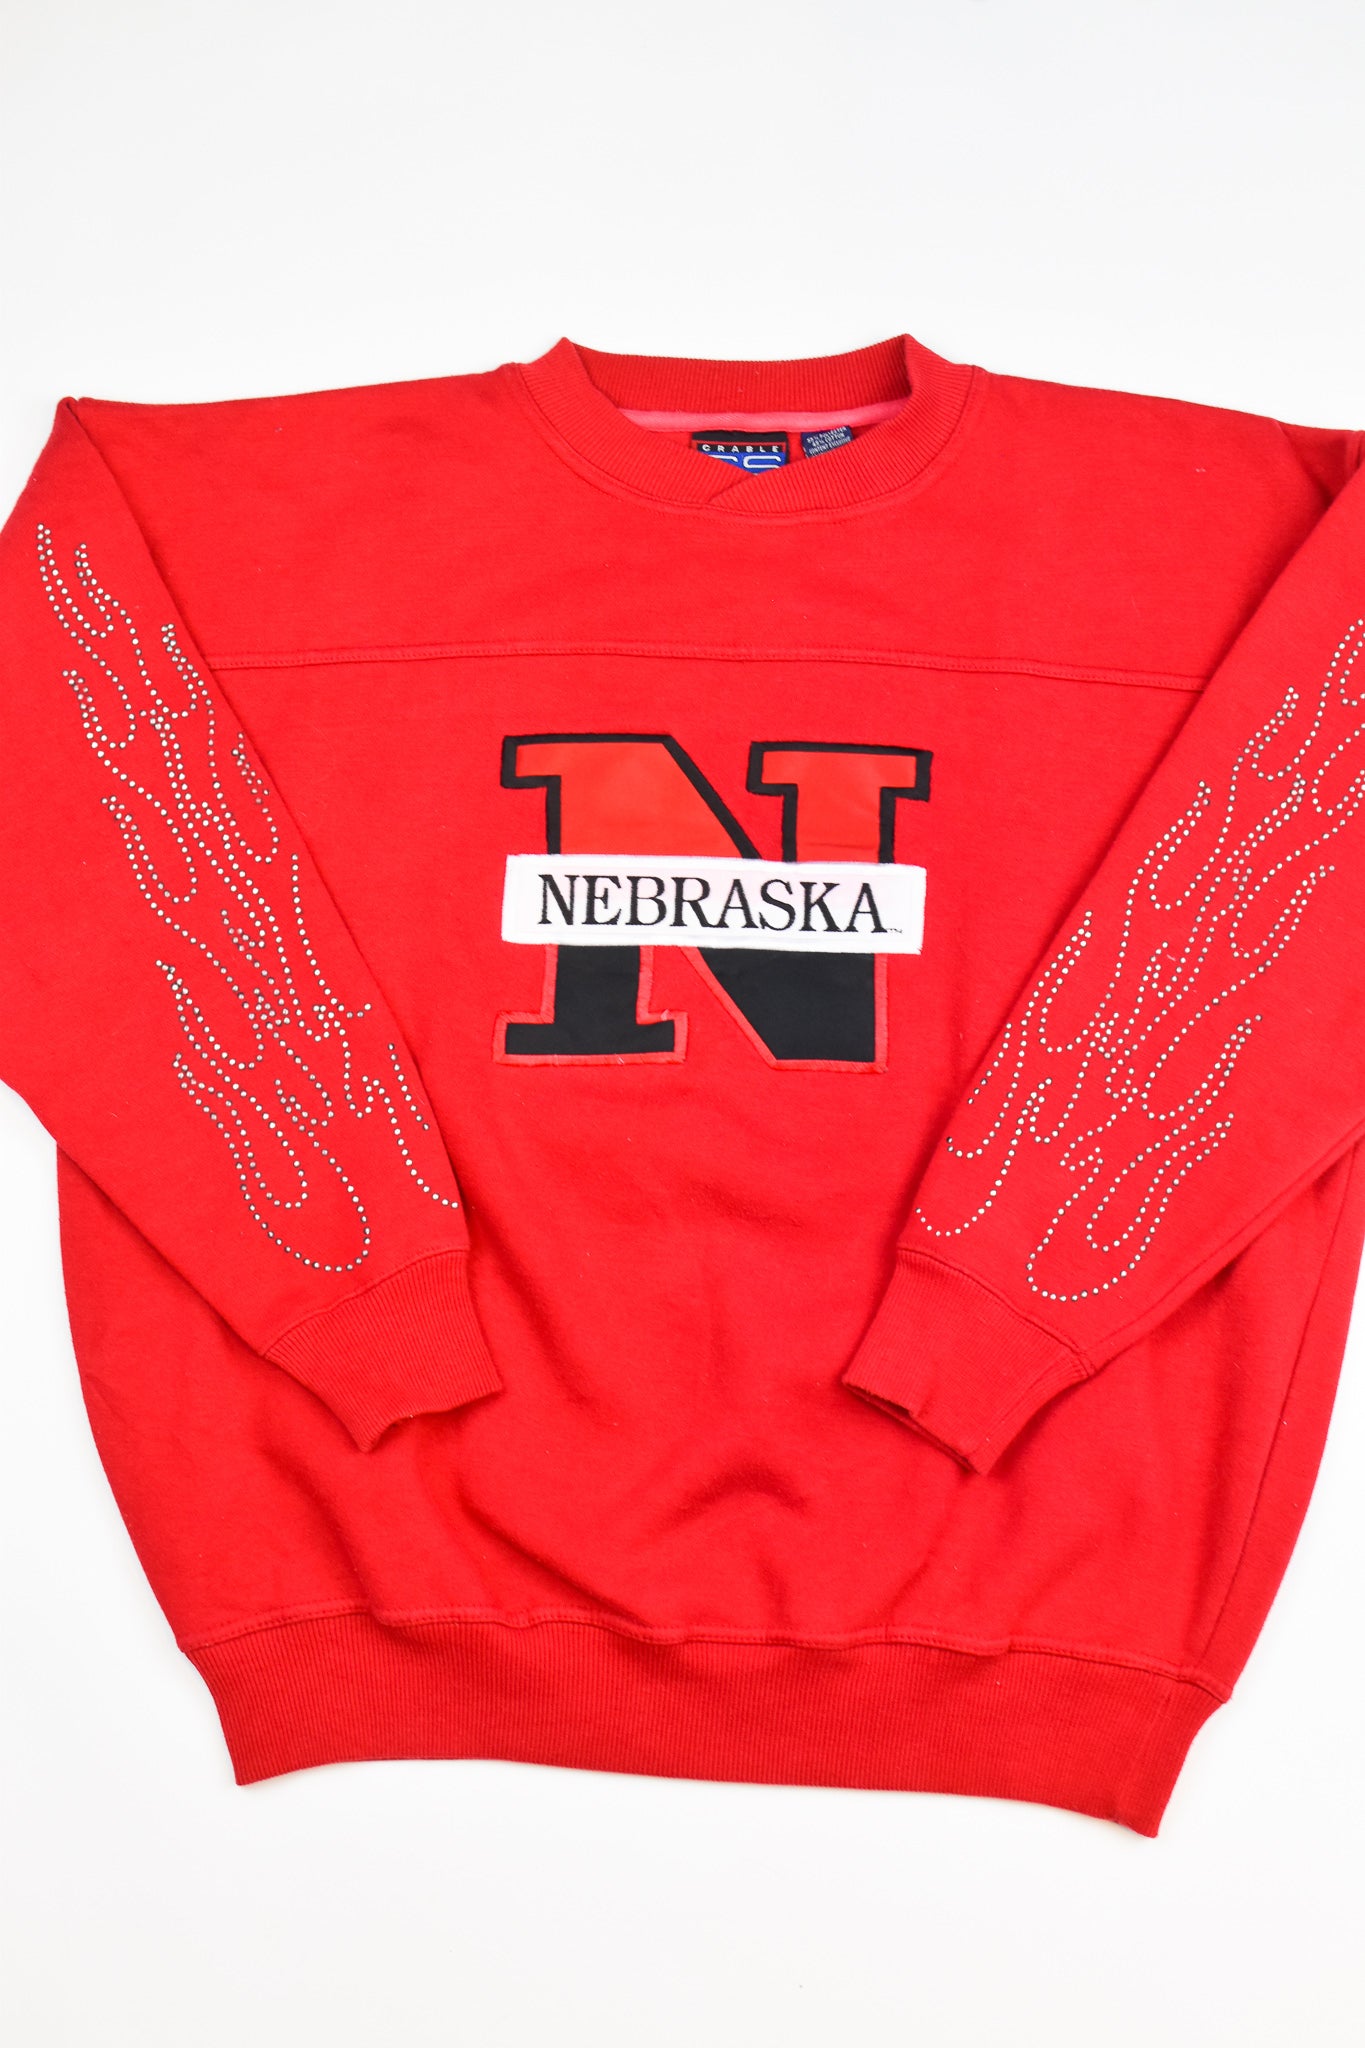 Upcycled Vintage Nebraska Flame Sweatshirt